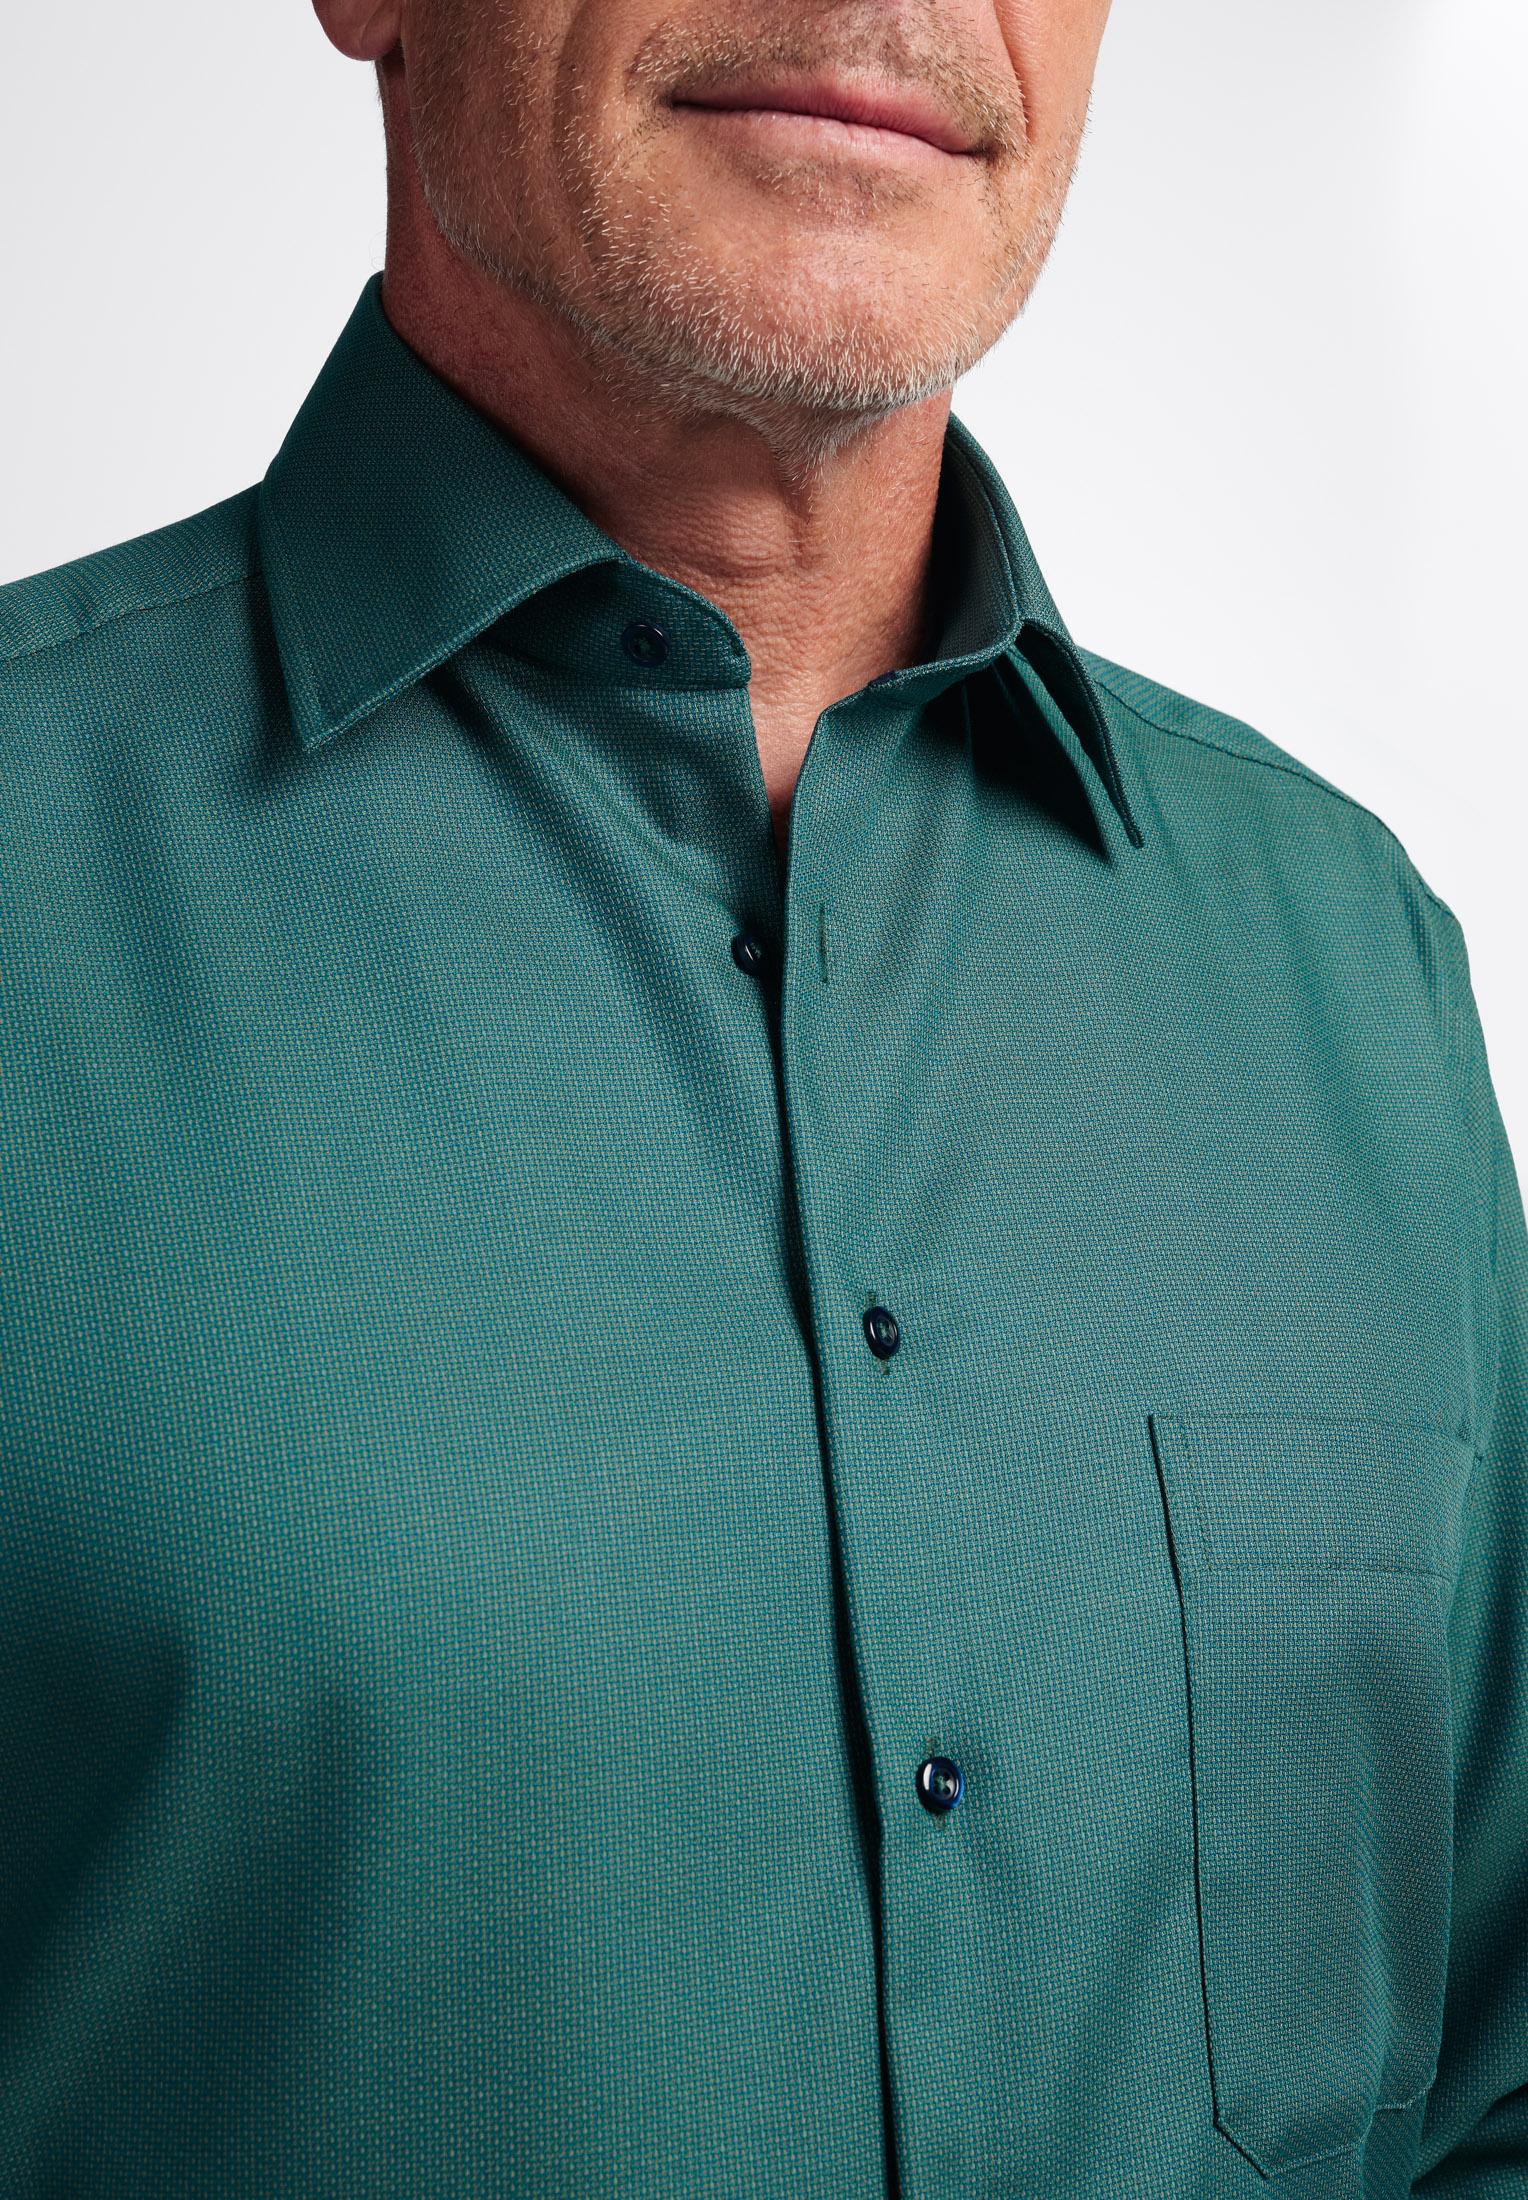 Мужская рубашка ETERNA, зеленая, цвет зеленый, размер 48 - фото 2